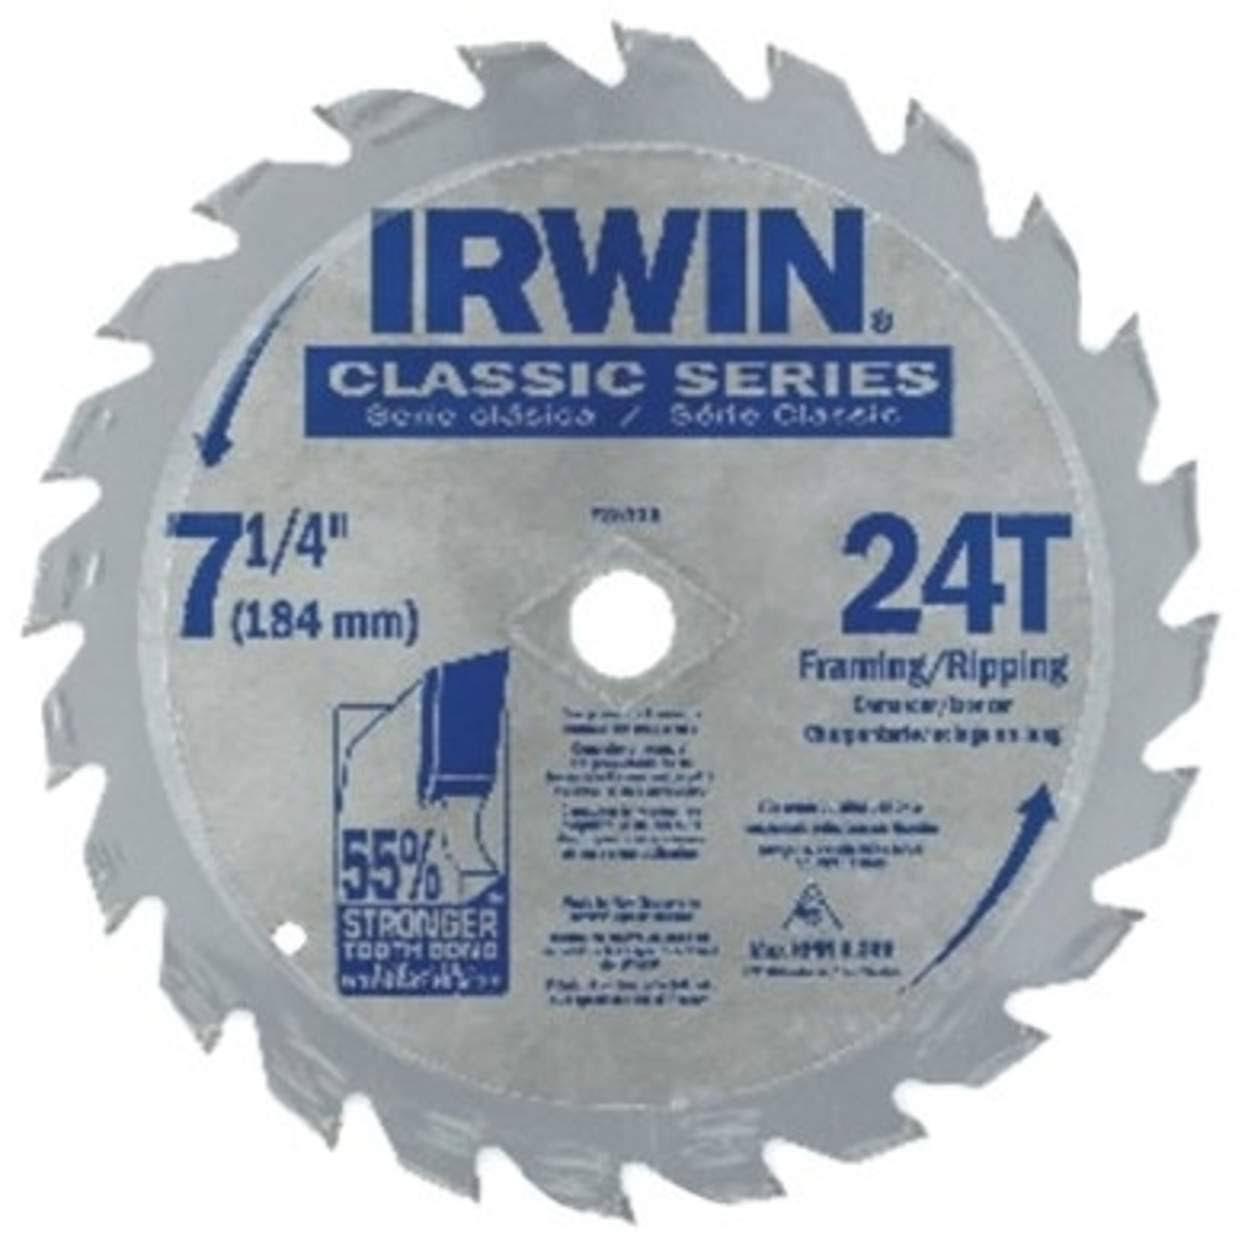 Irwin Classic Series Carbide Tipped Circular Saw Blade - 7 1/4", 24 Teeth